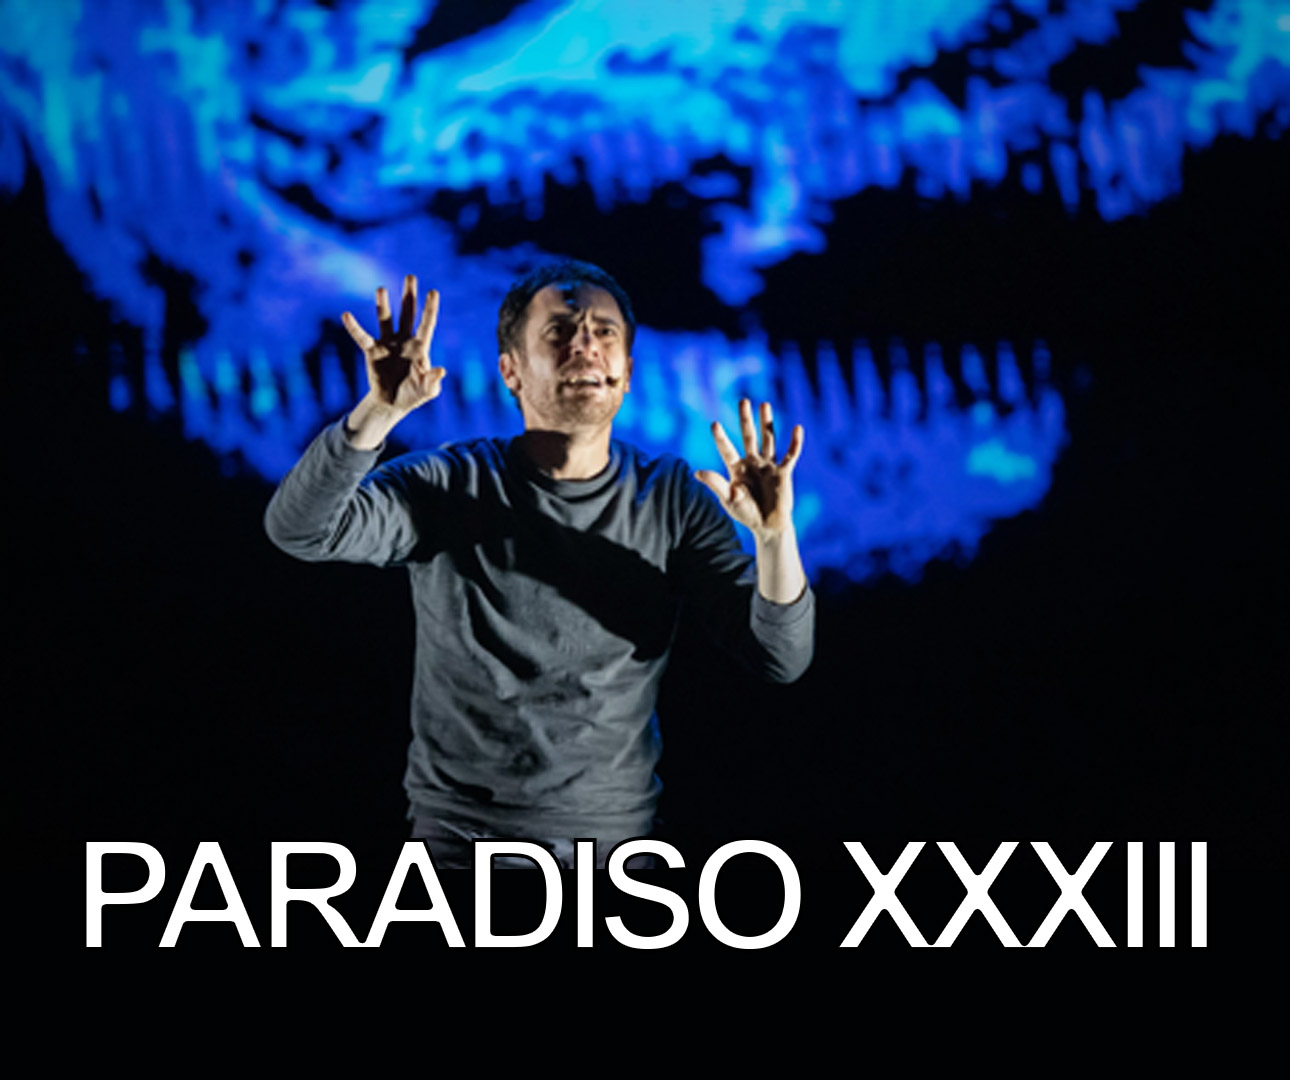 Paradiso XXXIII